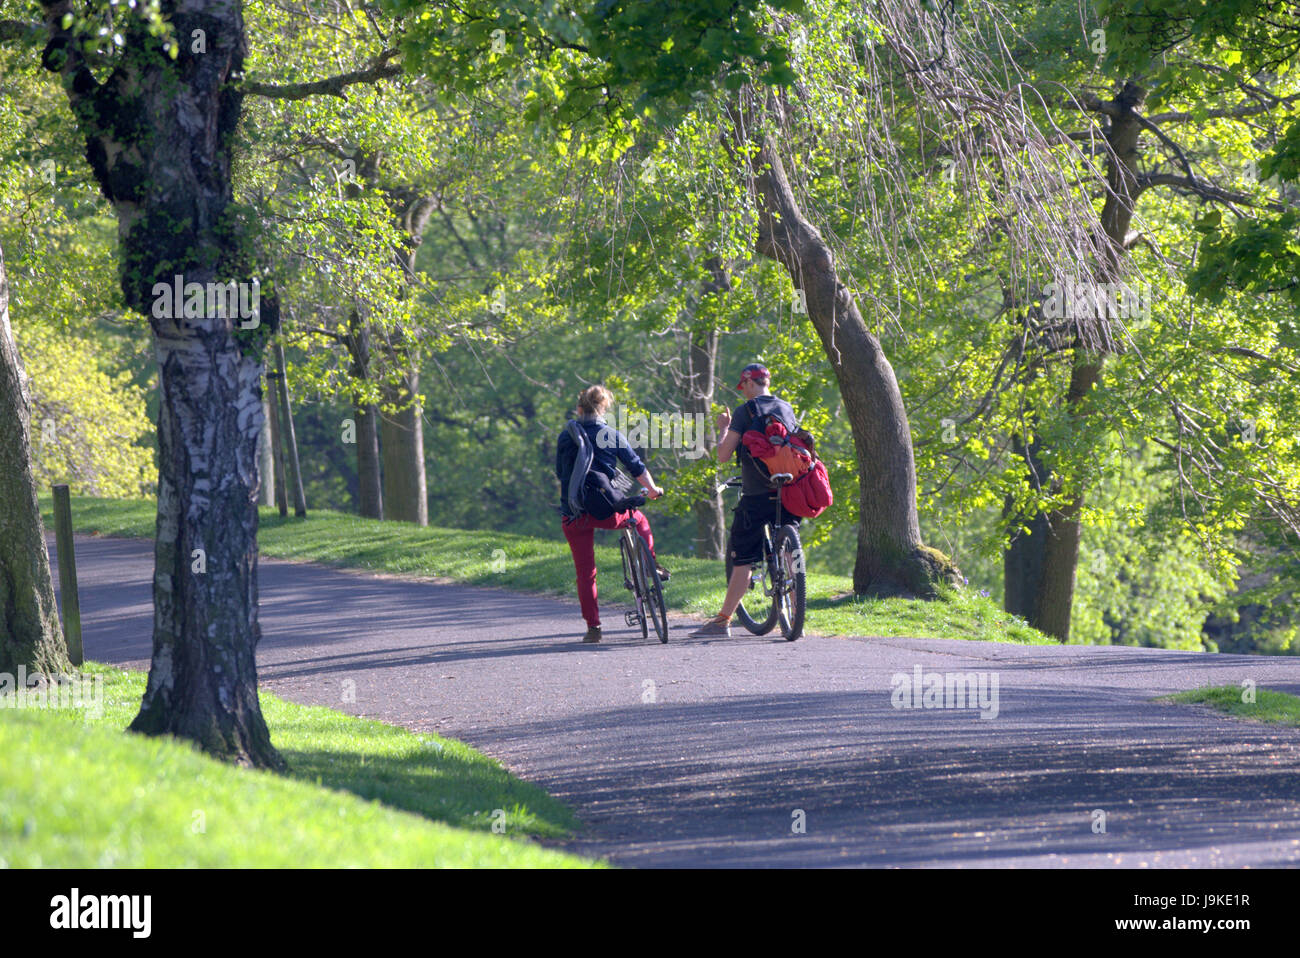 Glasgow Kelvingrove Park vélos cyclistes sur scènes Banque D'Images